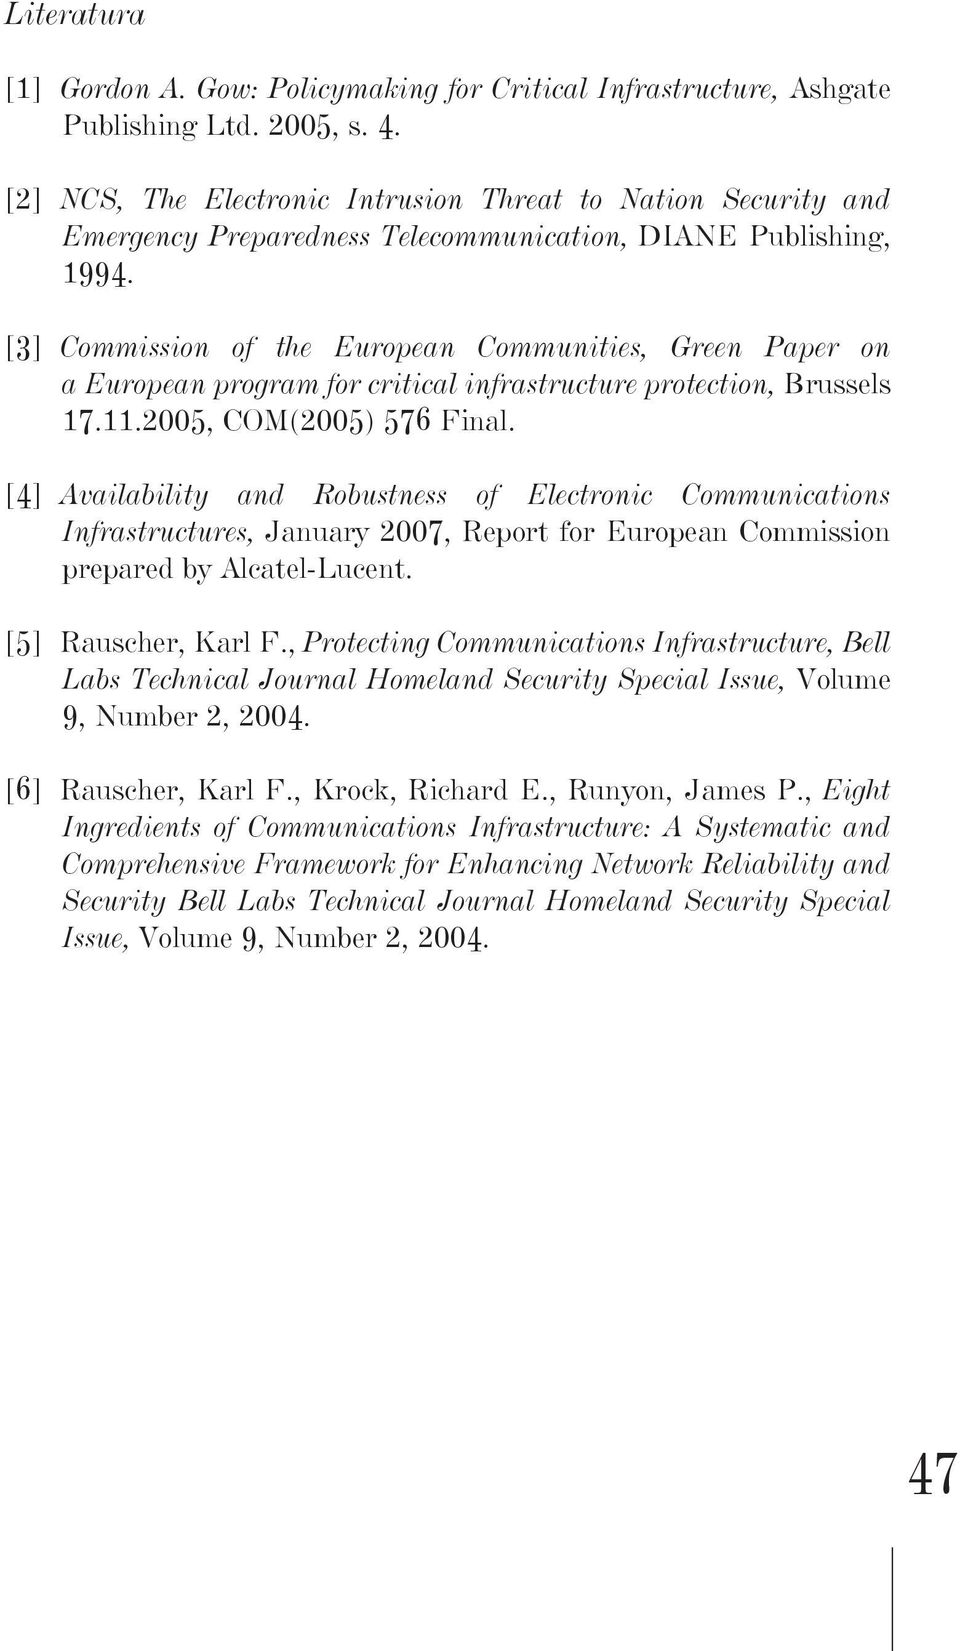 [3] Cmmissin f the Eurpean Cmmunities, Green Paper n a Eurpean prgram fr critical infrastructure prtectin, Brussels 17.11.2005, COM(2005) 576 Final.